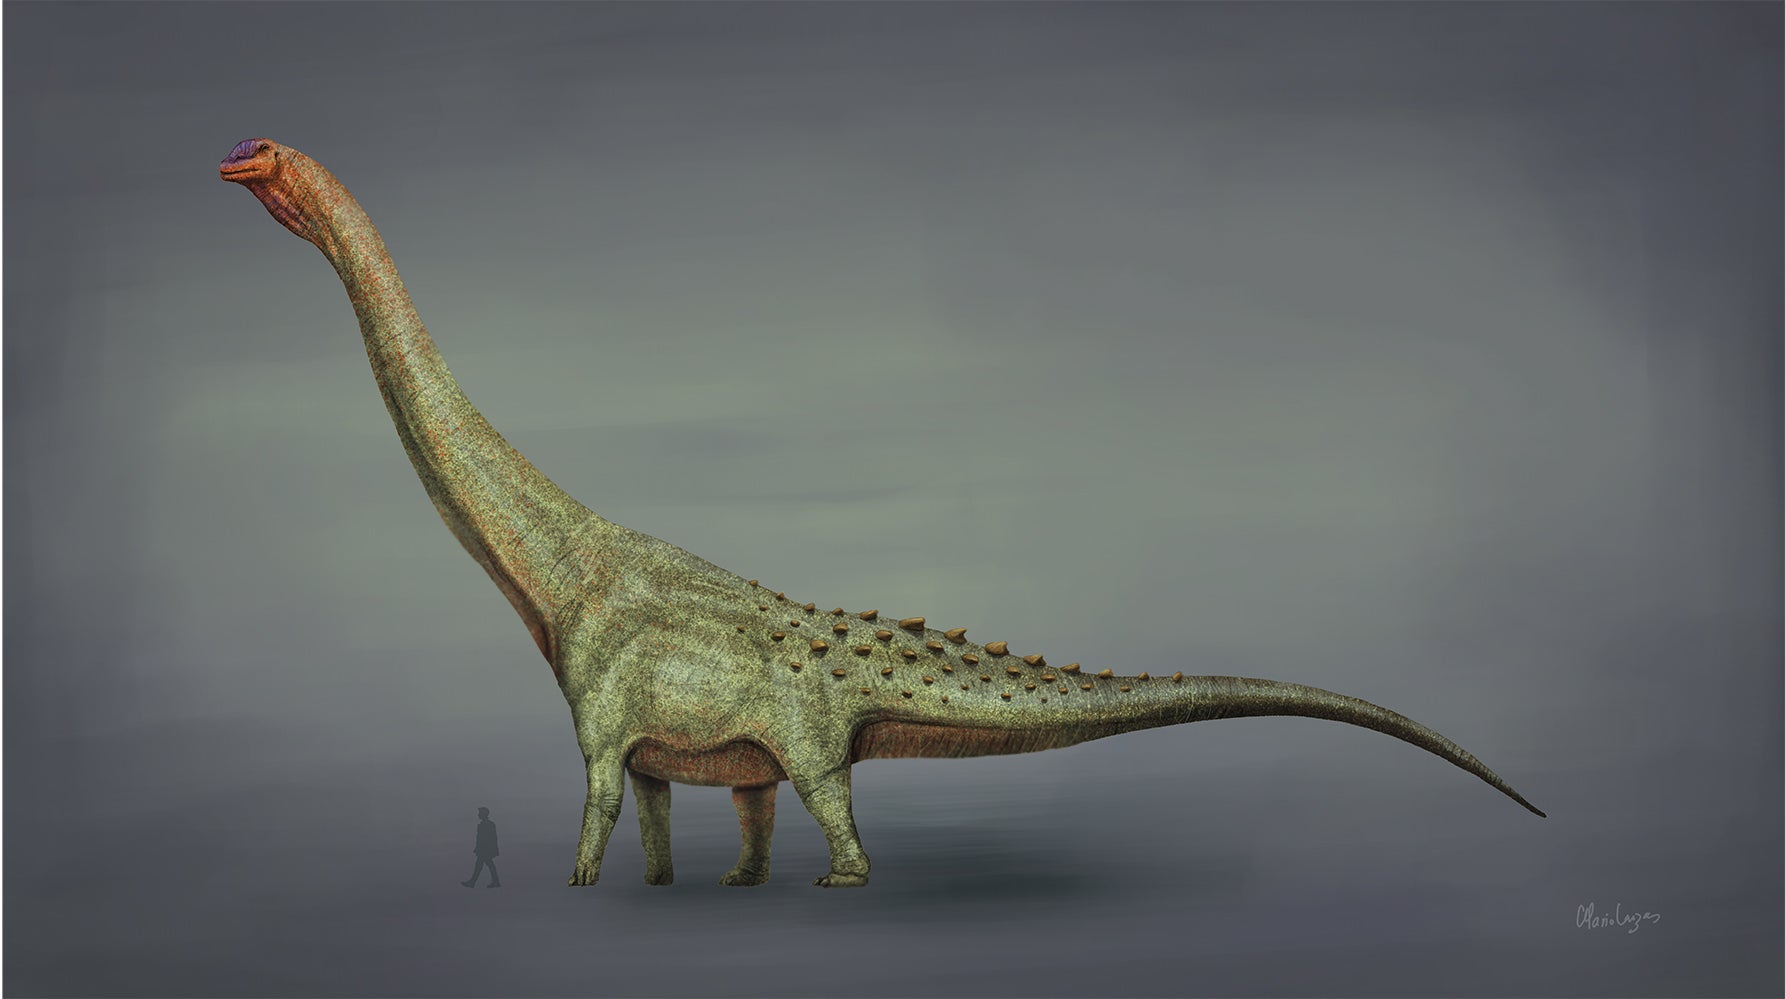 رسم توضيحي لفنان قديم لتيتانوصور (باتاغوتيتان) مقارنة بالإنسان.